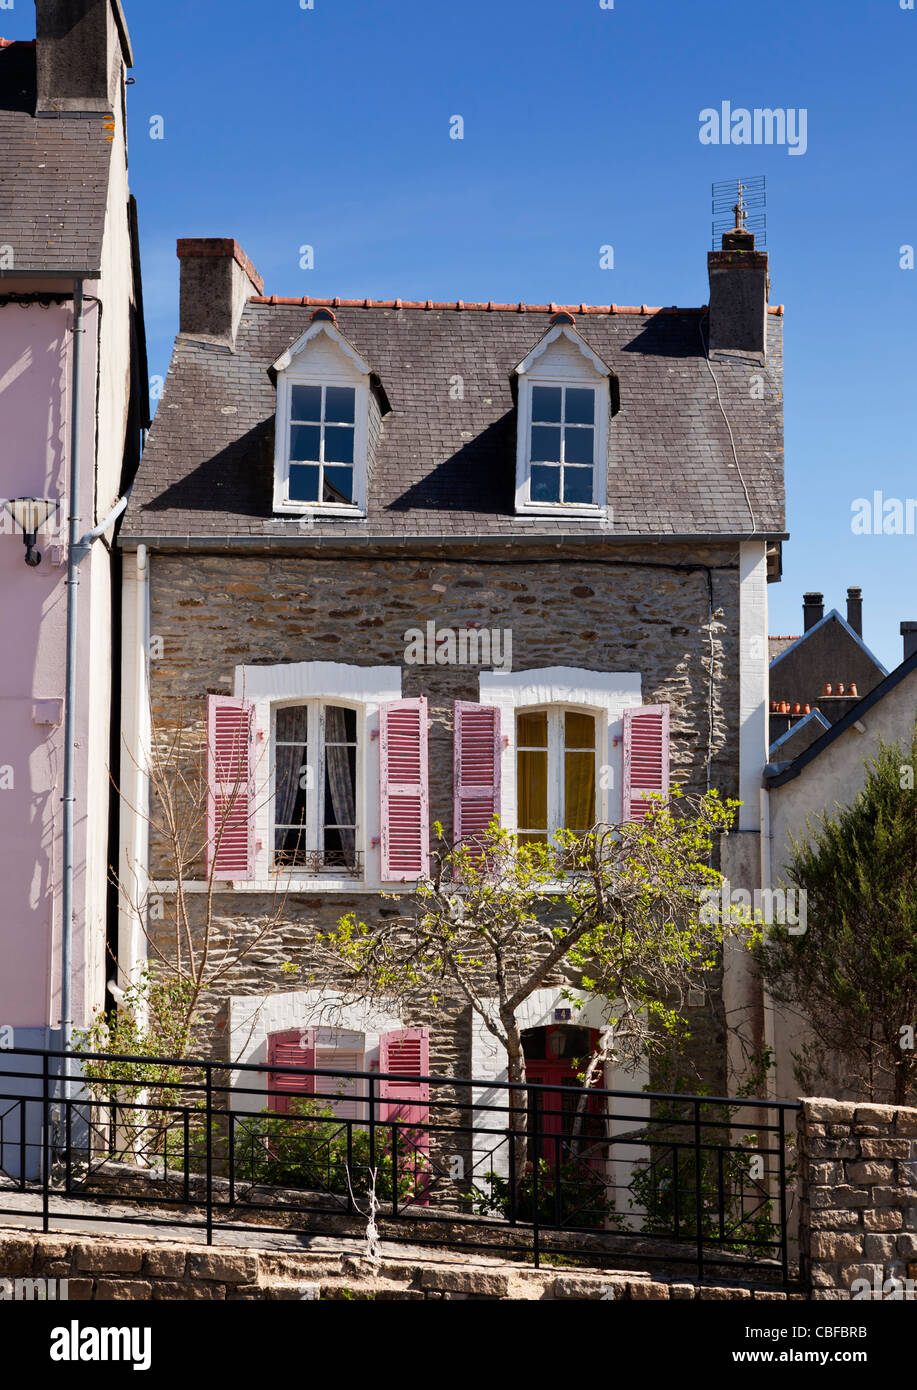 Typique maison bretonne, Bretagne, France Banque D'Images